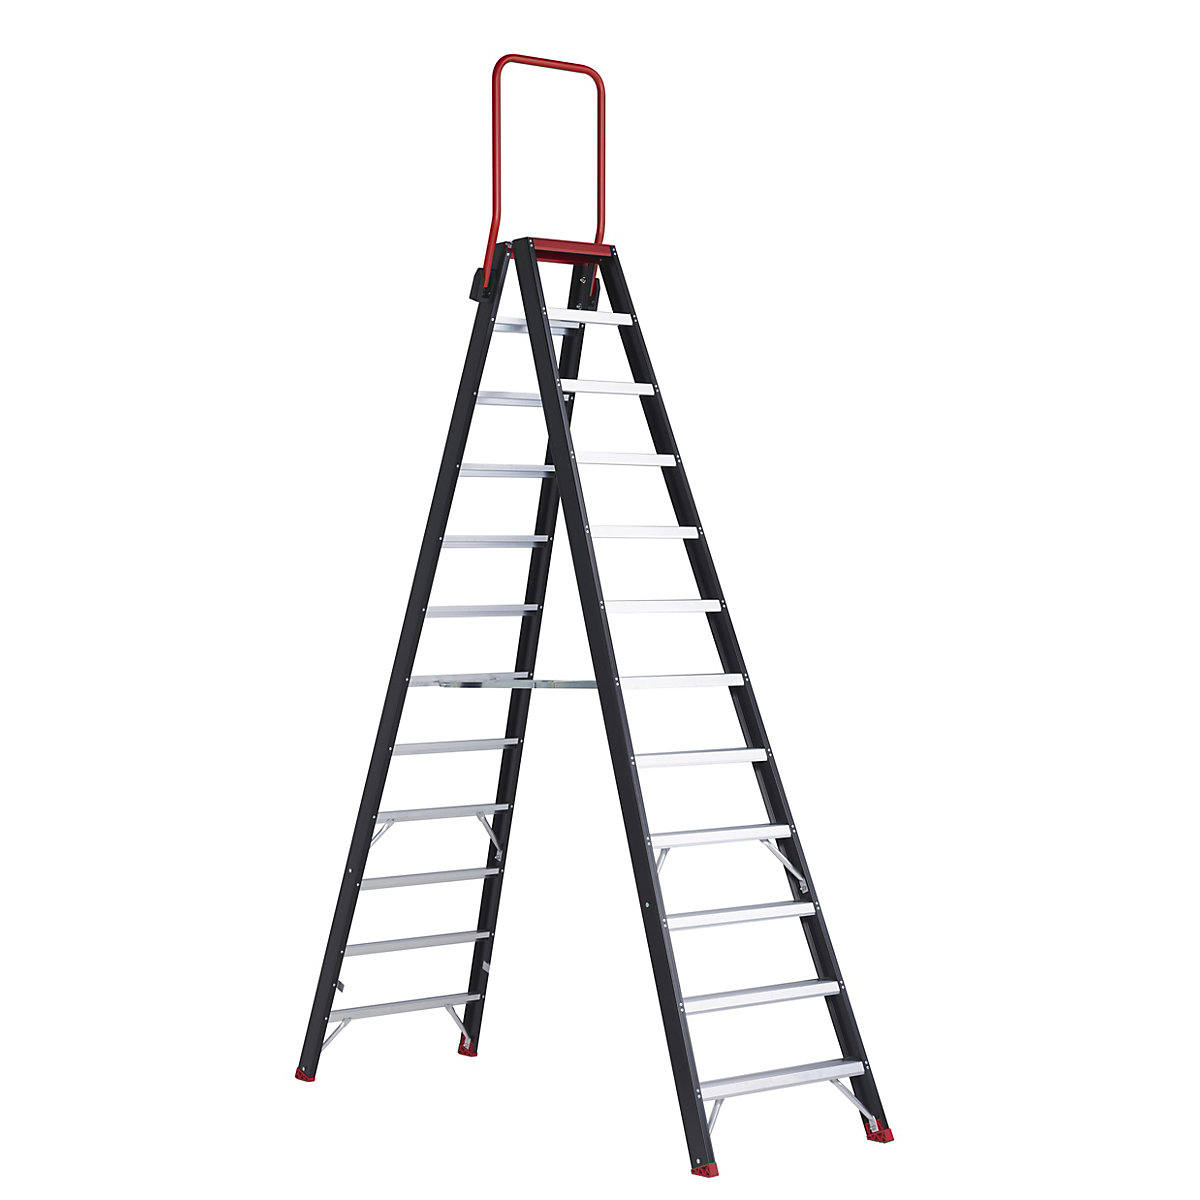 Altrex Sicherheits-Stehleiter, beidseitig begehbar, 2 x 12 Stufen